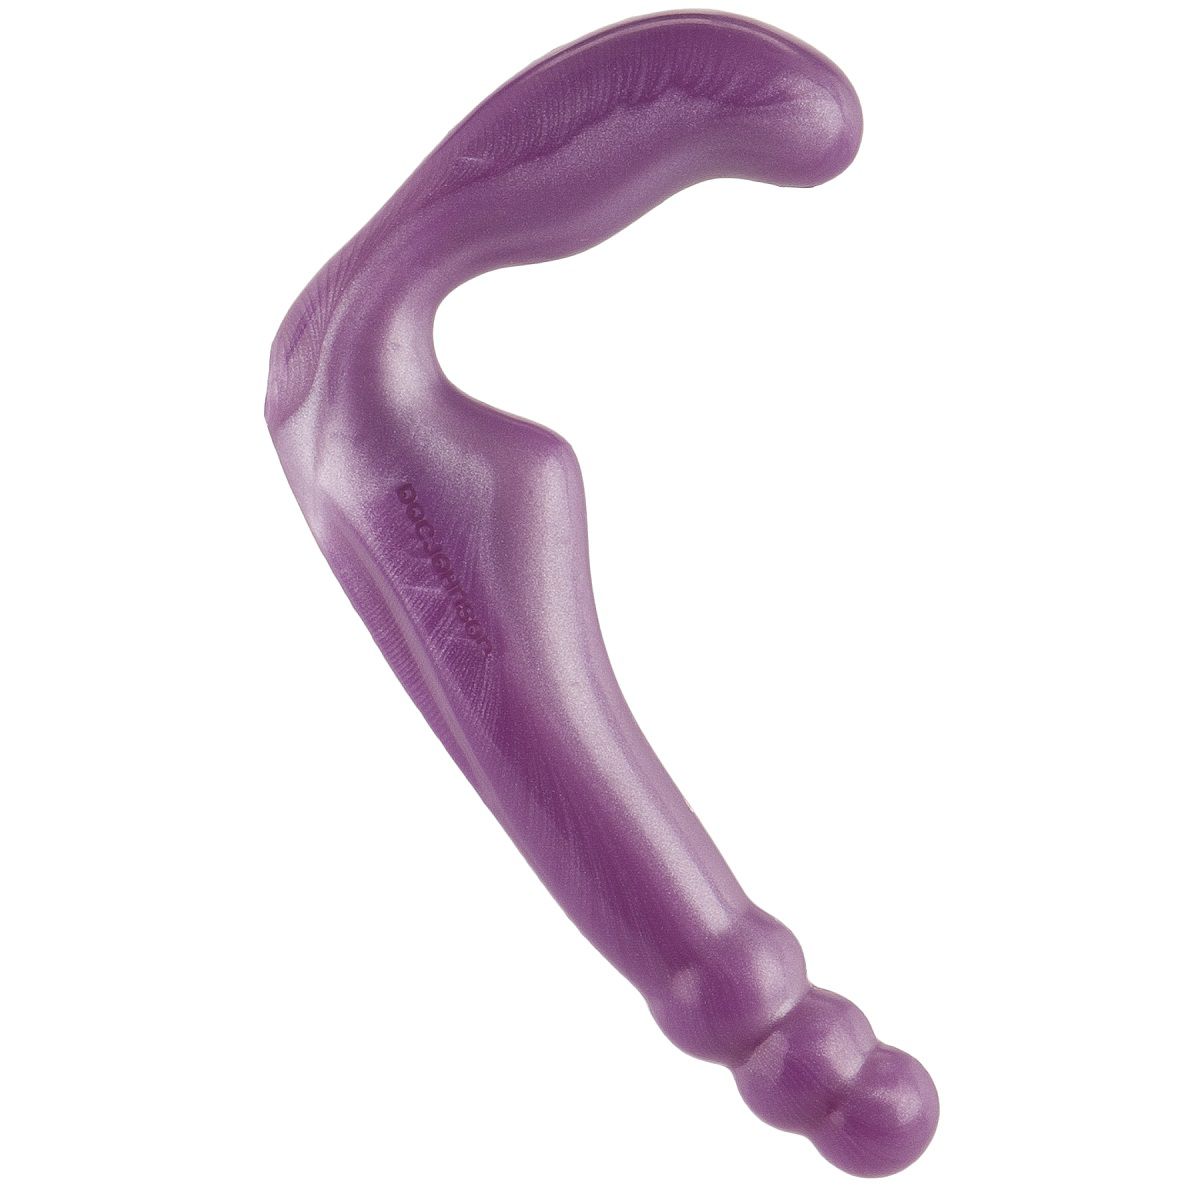 Безремневой фиолетовый страпон из силикона The Gal Pal - 17 см.